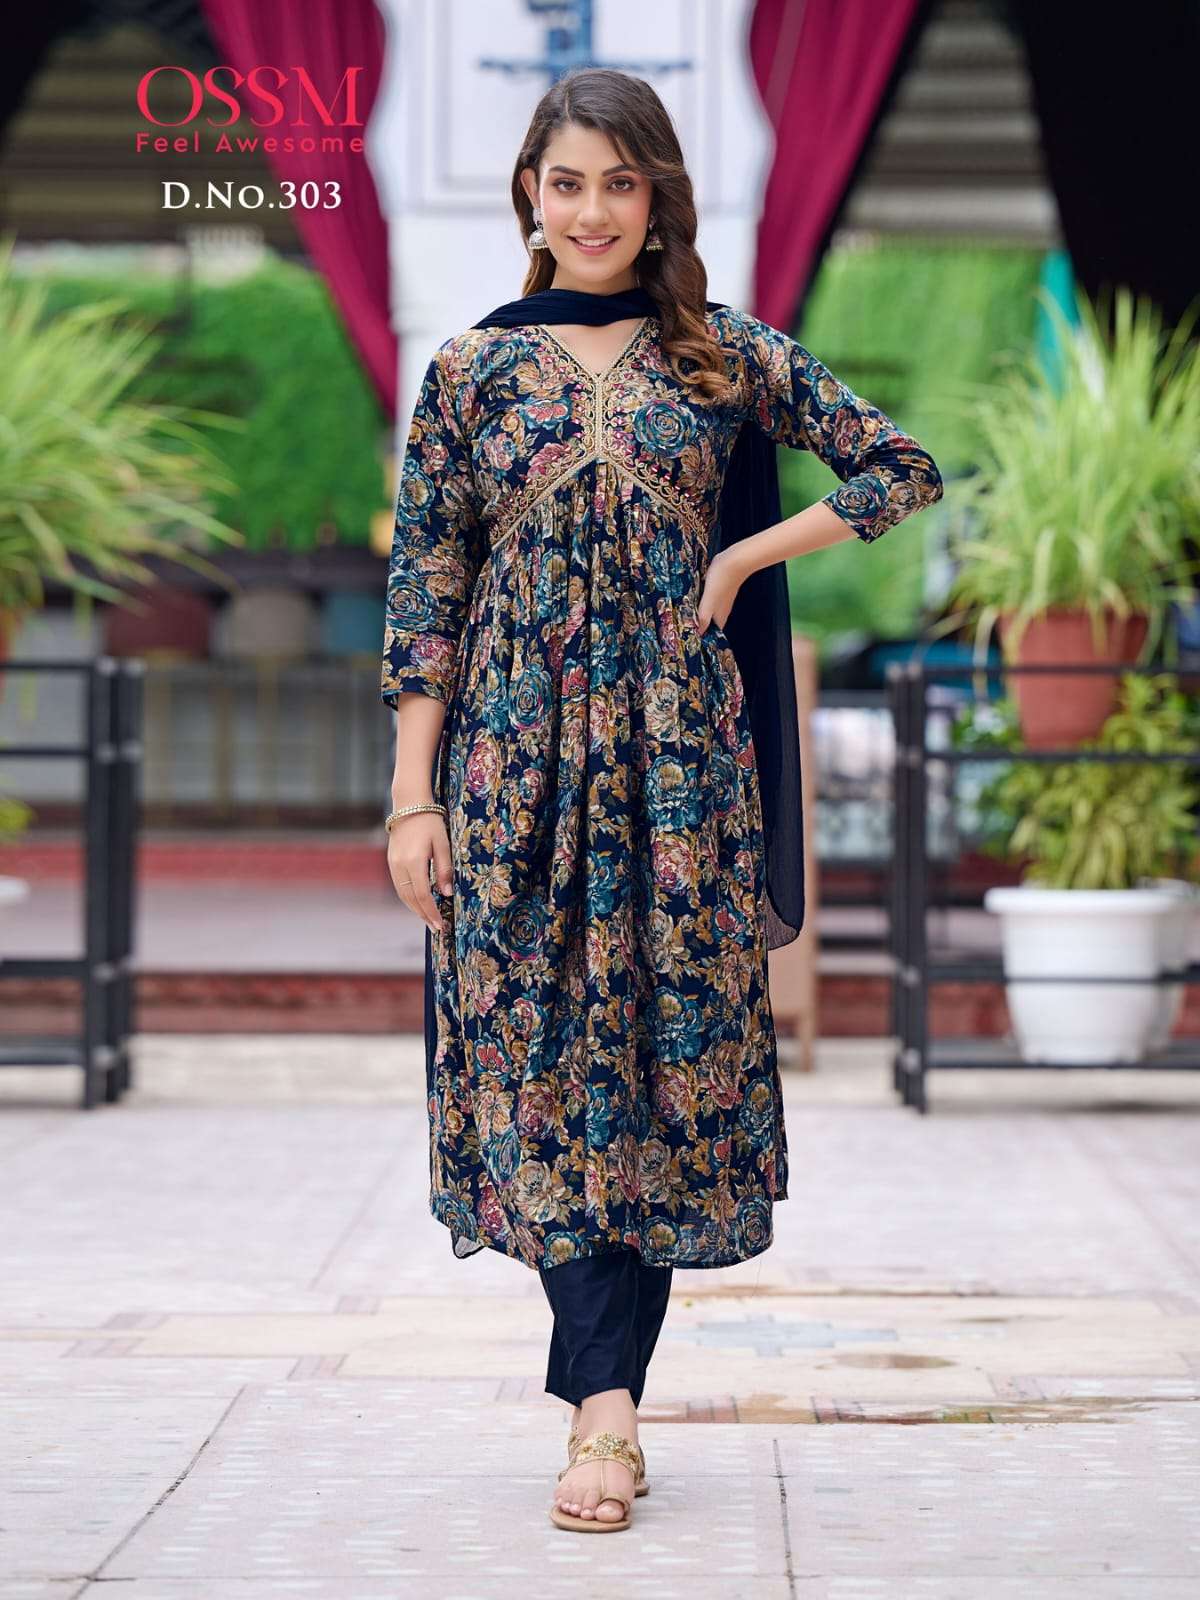 Buy Lemon Printed Modal Rayon Sleeveless Long Kurti Online in India | Kurti  designs, Long kurti designs, Indian fashion dresses